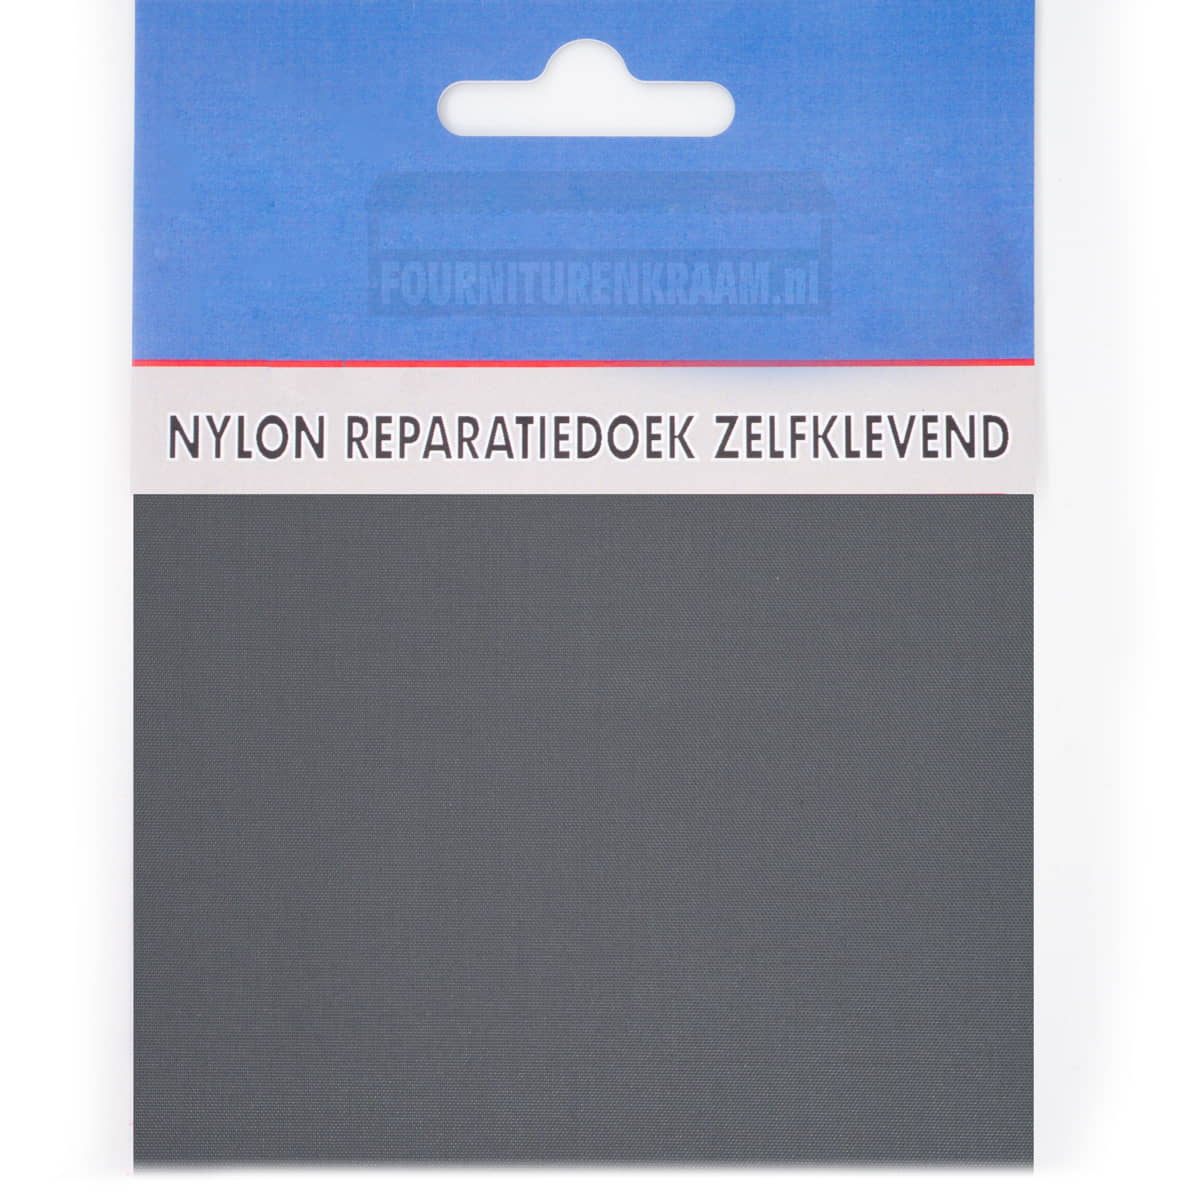 Zelfklevend repartiedoek huismerk | Nylon | 10 x 20 cm | Antraciet NYLON-1114-69